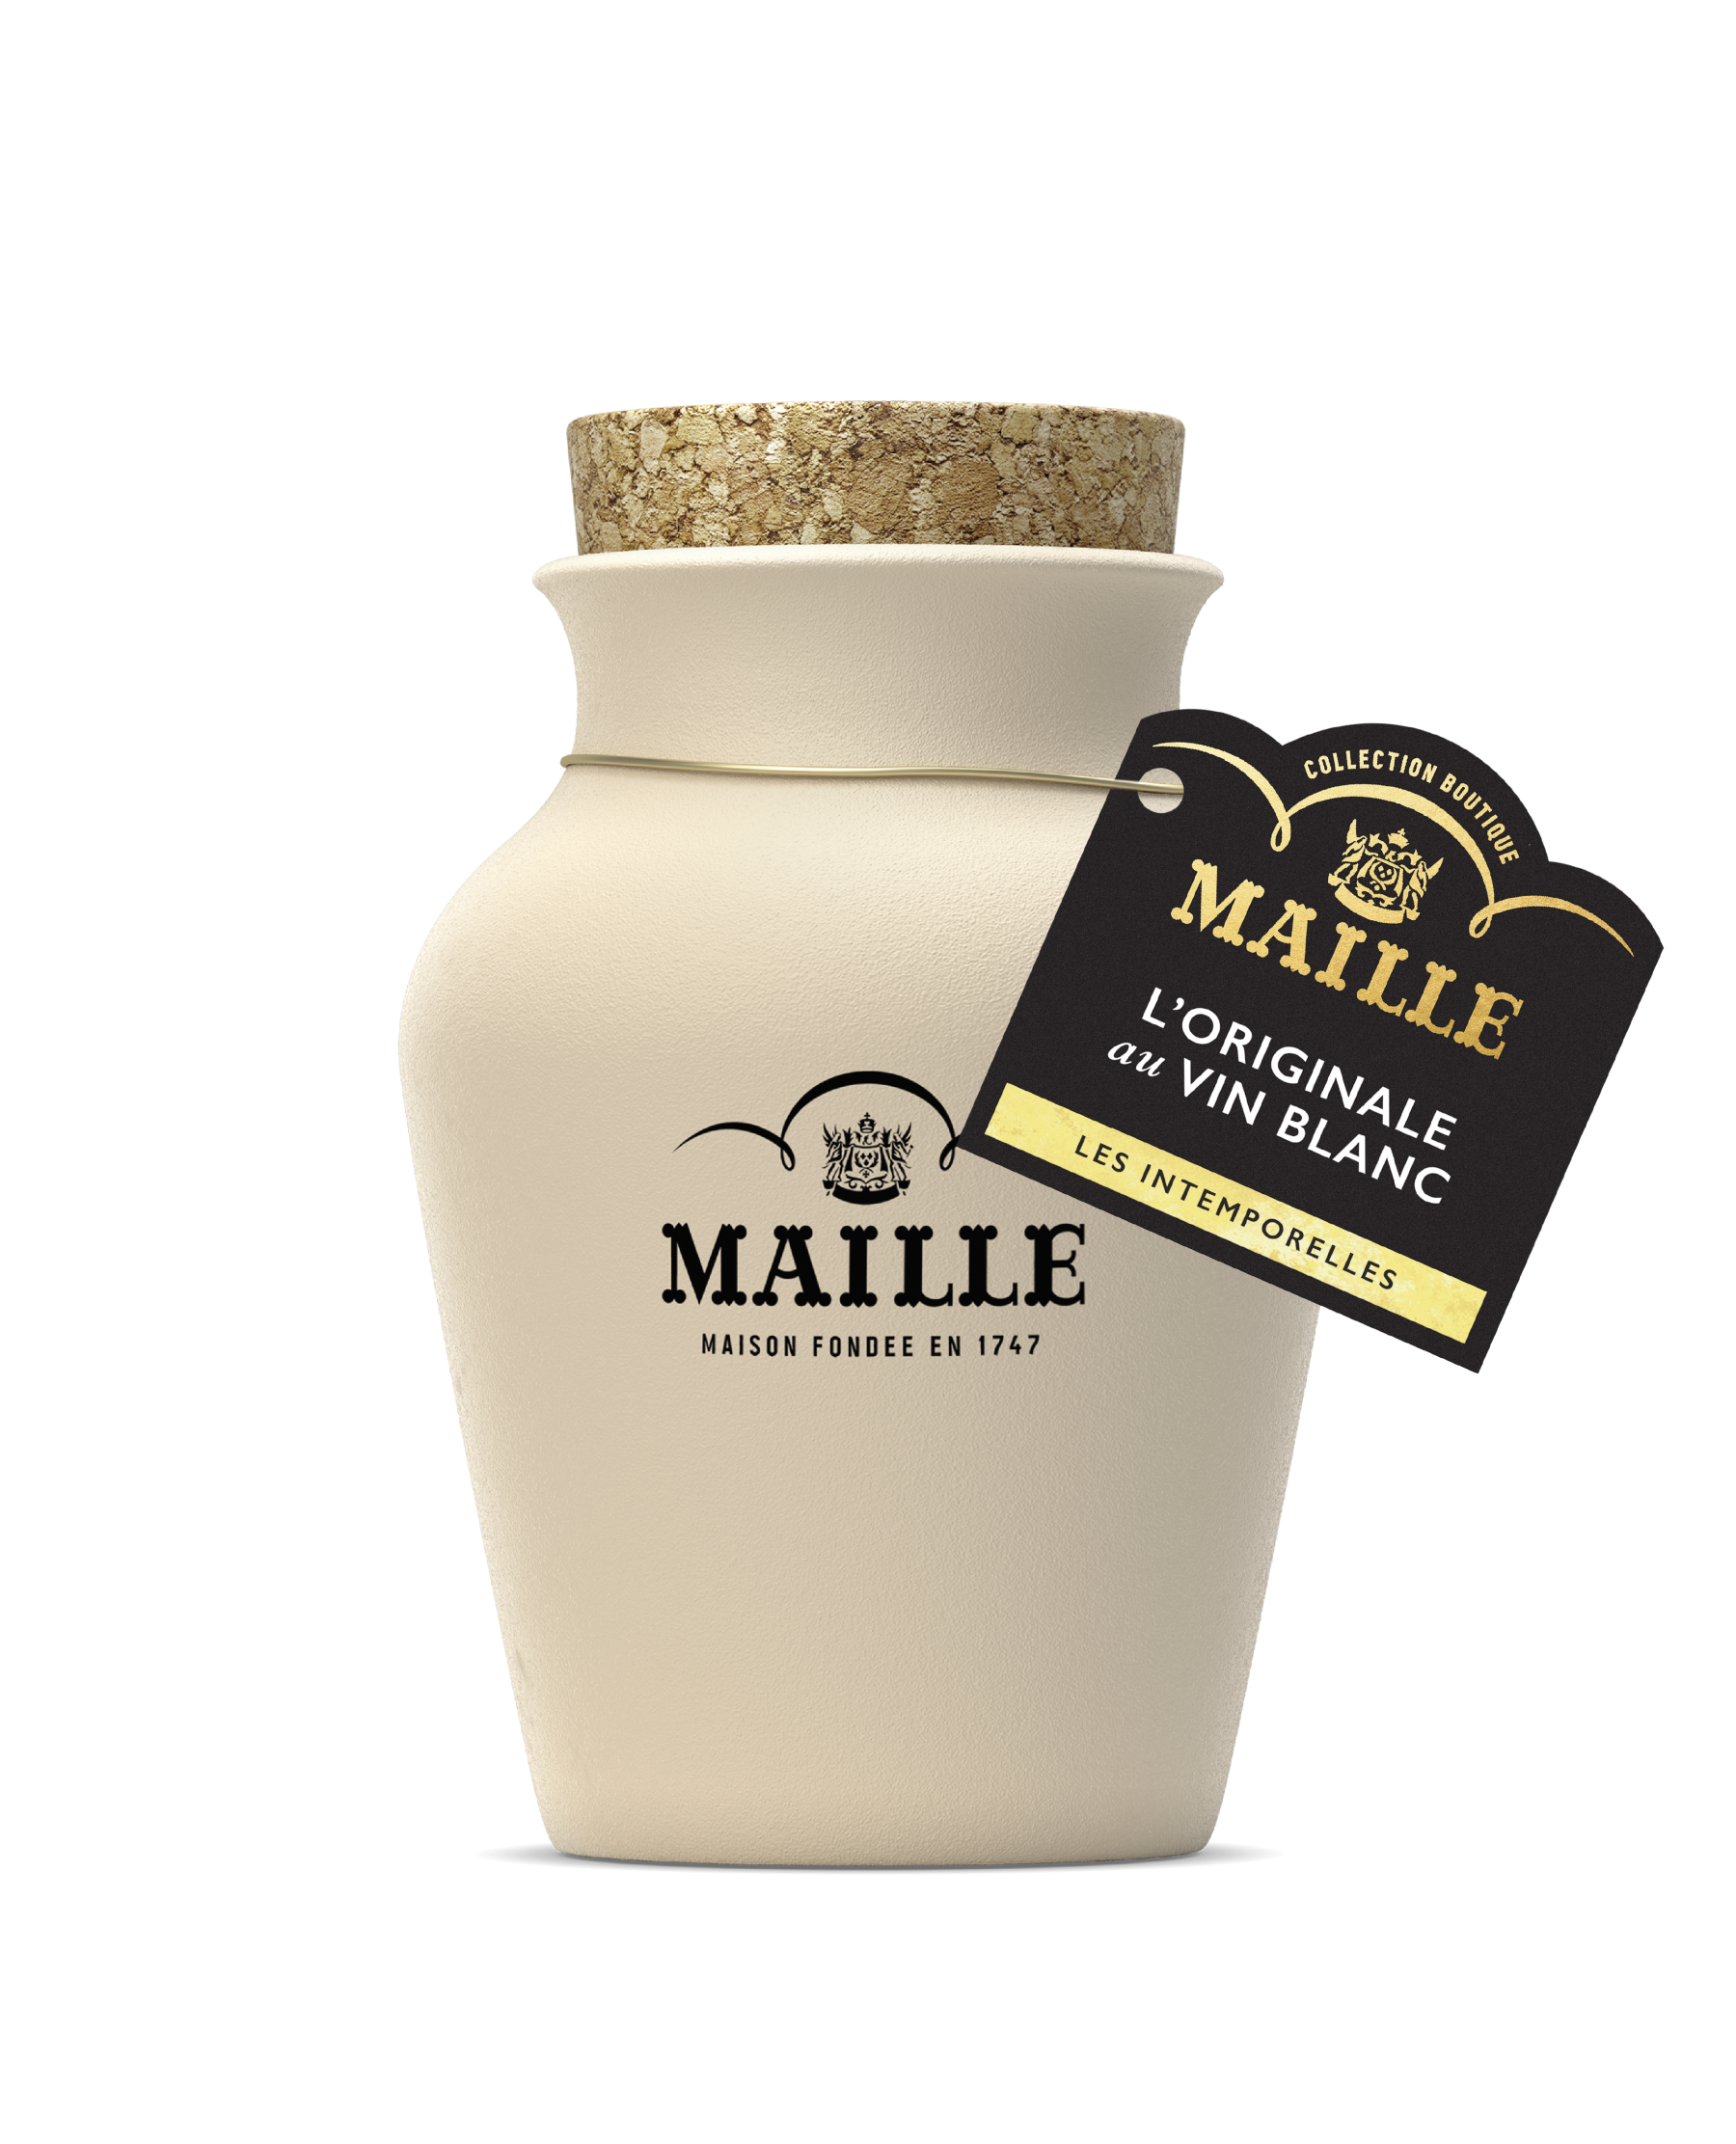 Maille - L'originale au vin blanc servie a la pompe